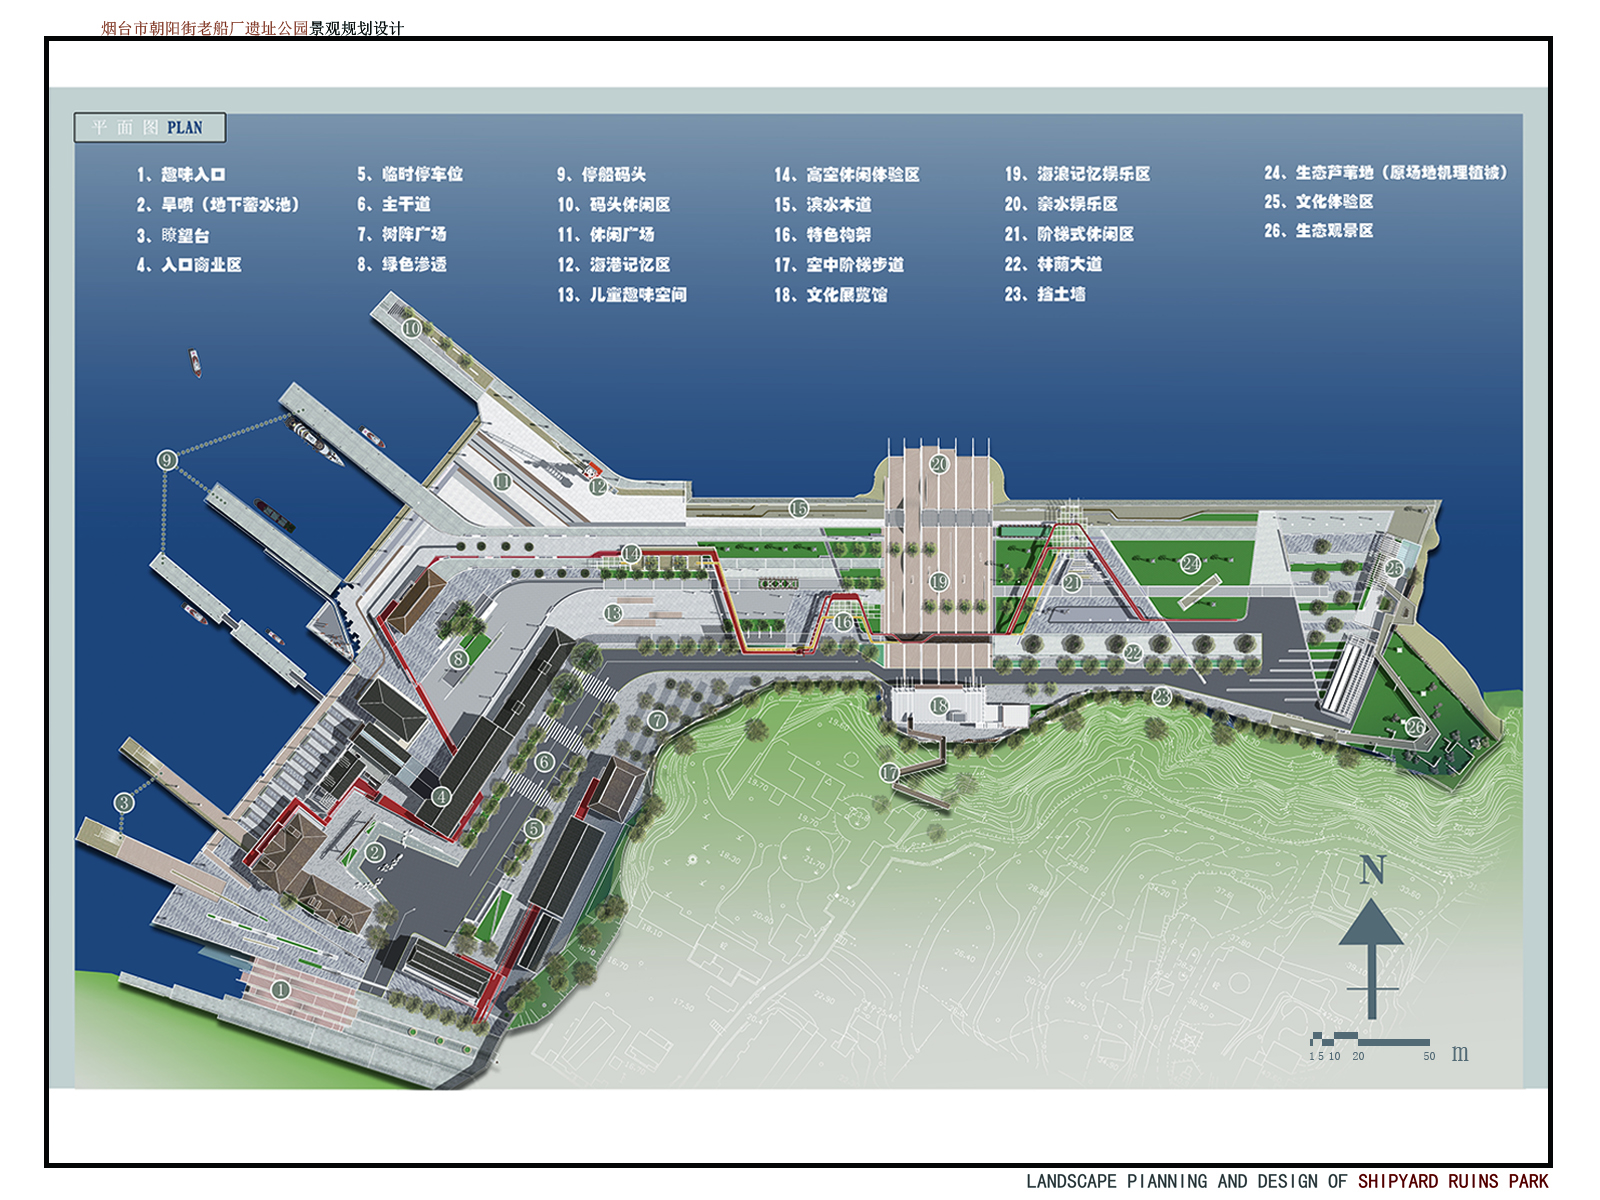 【概念设计】广州船厂城市设计国际竞赛方案效果图 - 知乎